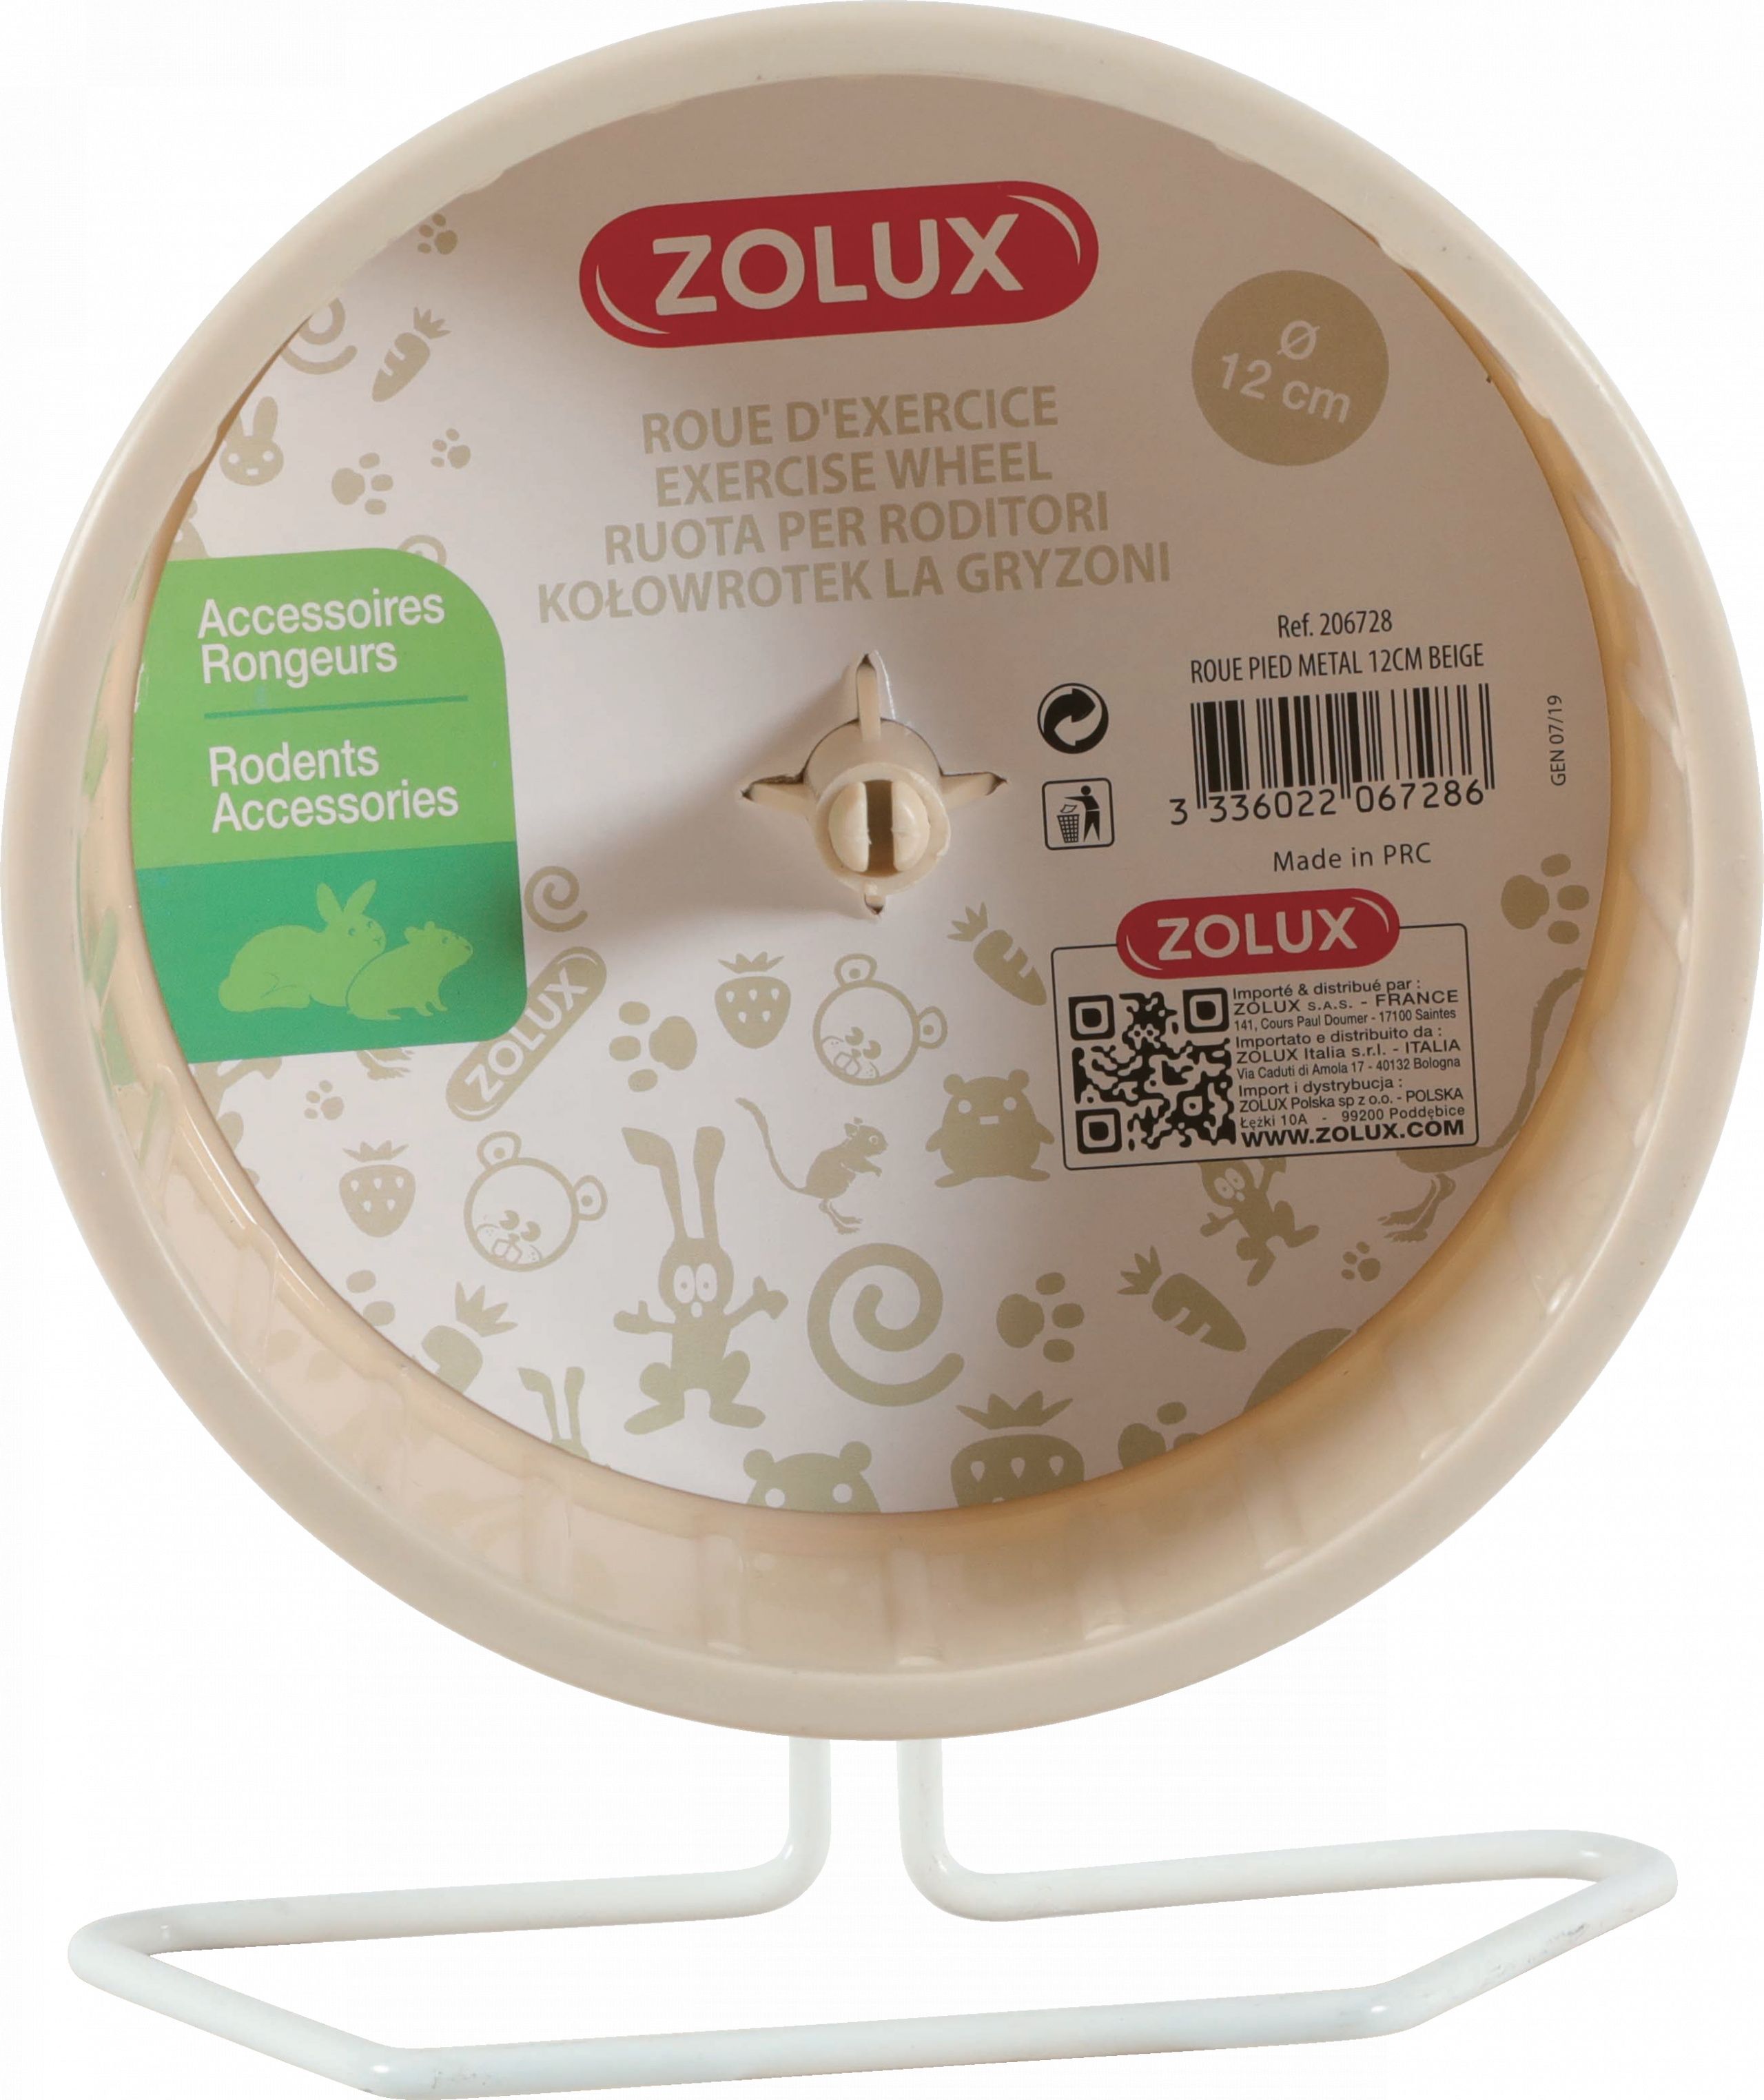 Zolux Kolowrotek plastikowy na metalowej podstawie 12 cm kol. bezowy 10104500 (3336022067286) grauzējiem